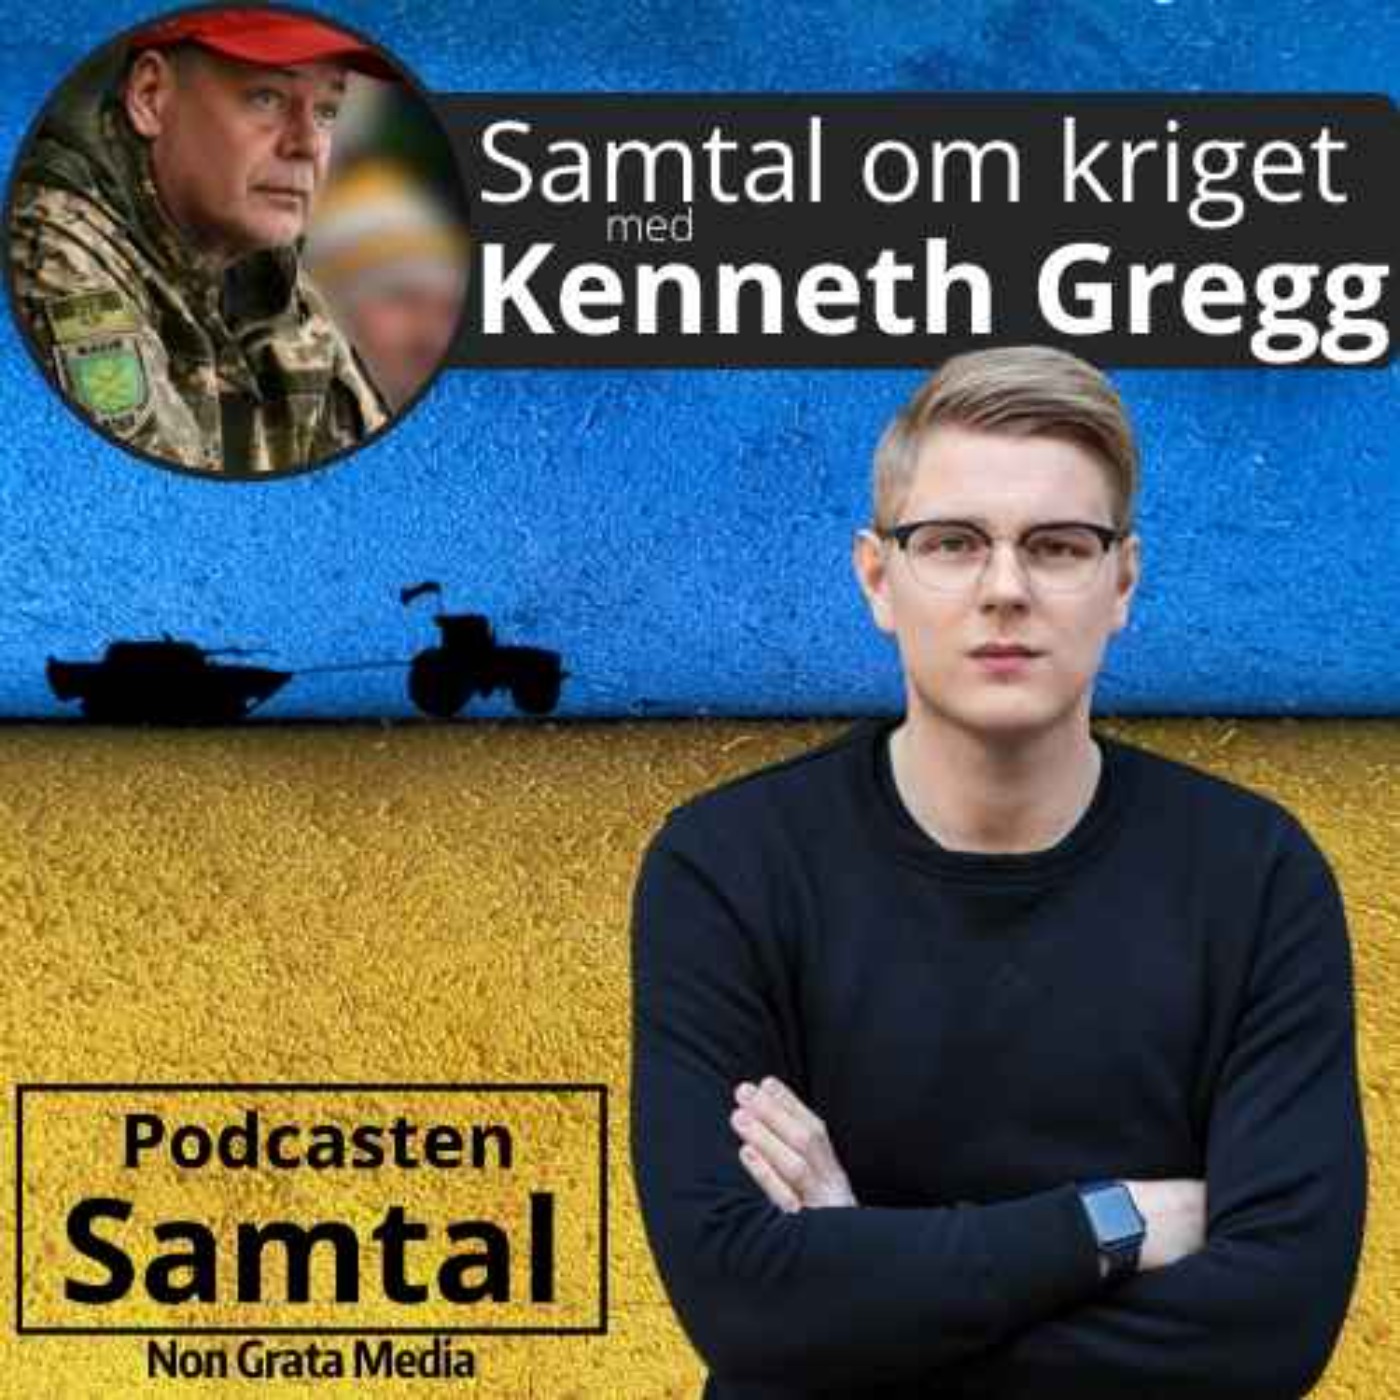 Samtal om kriget, med Kenneth Gregg (vecka 20)